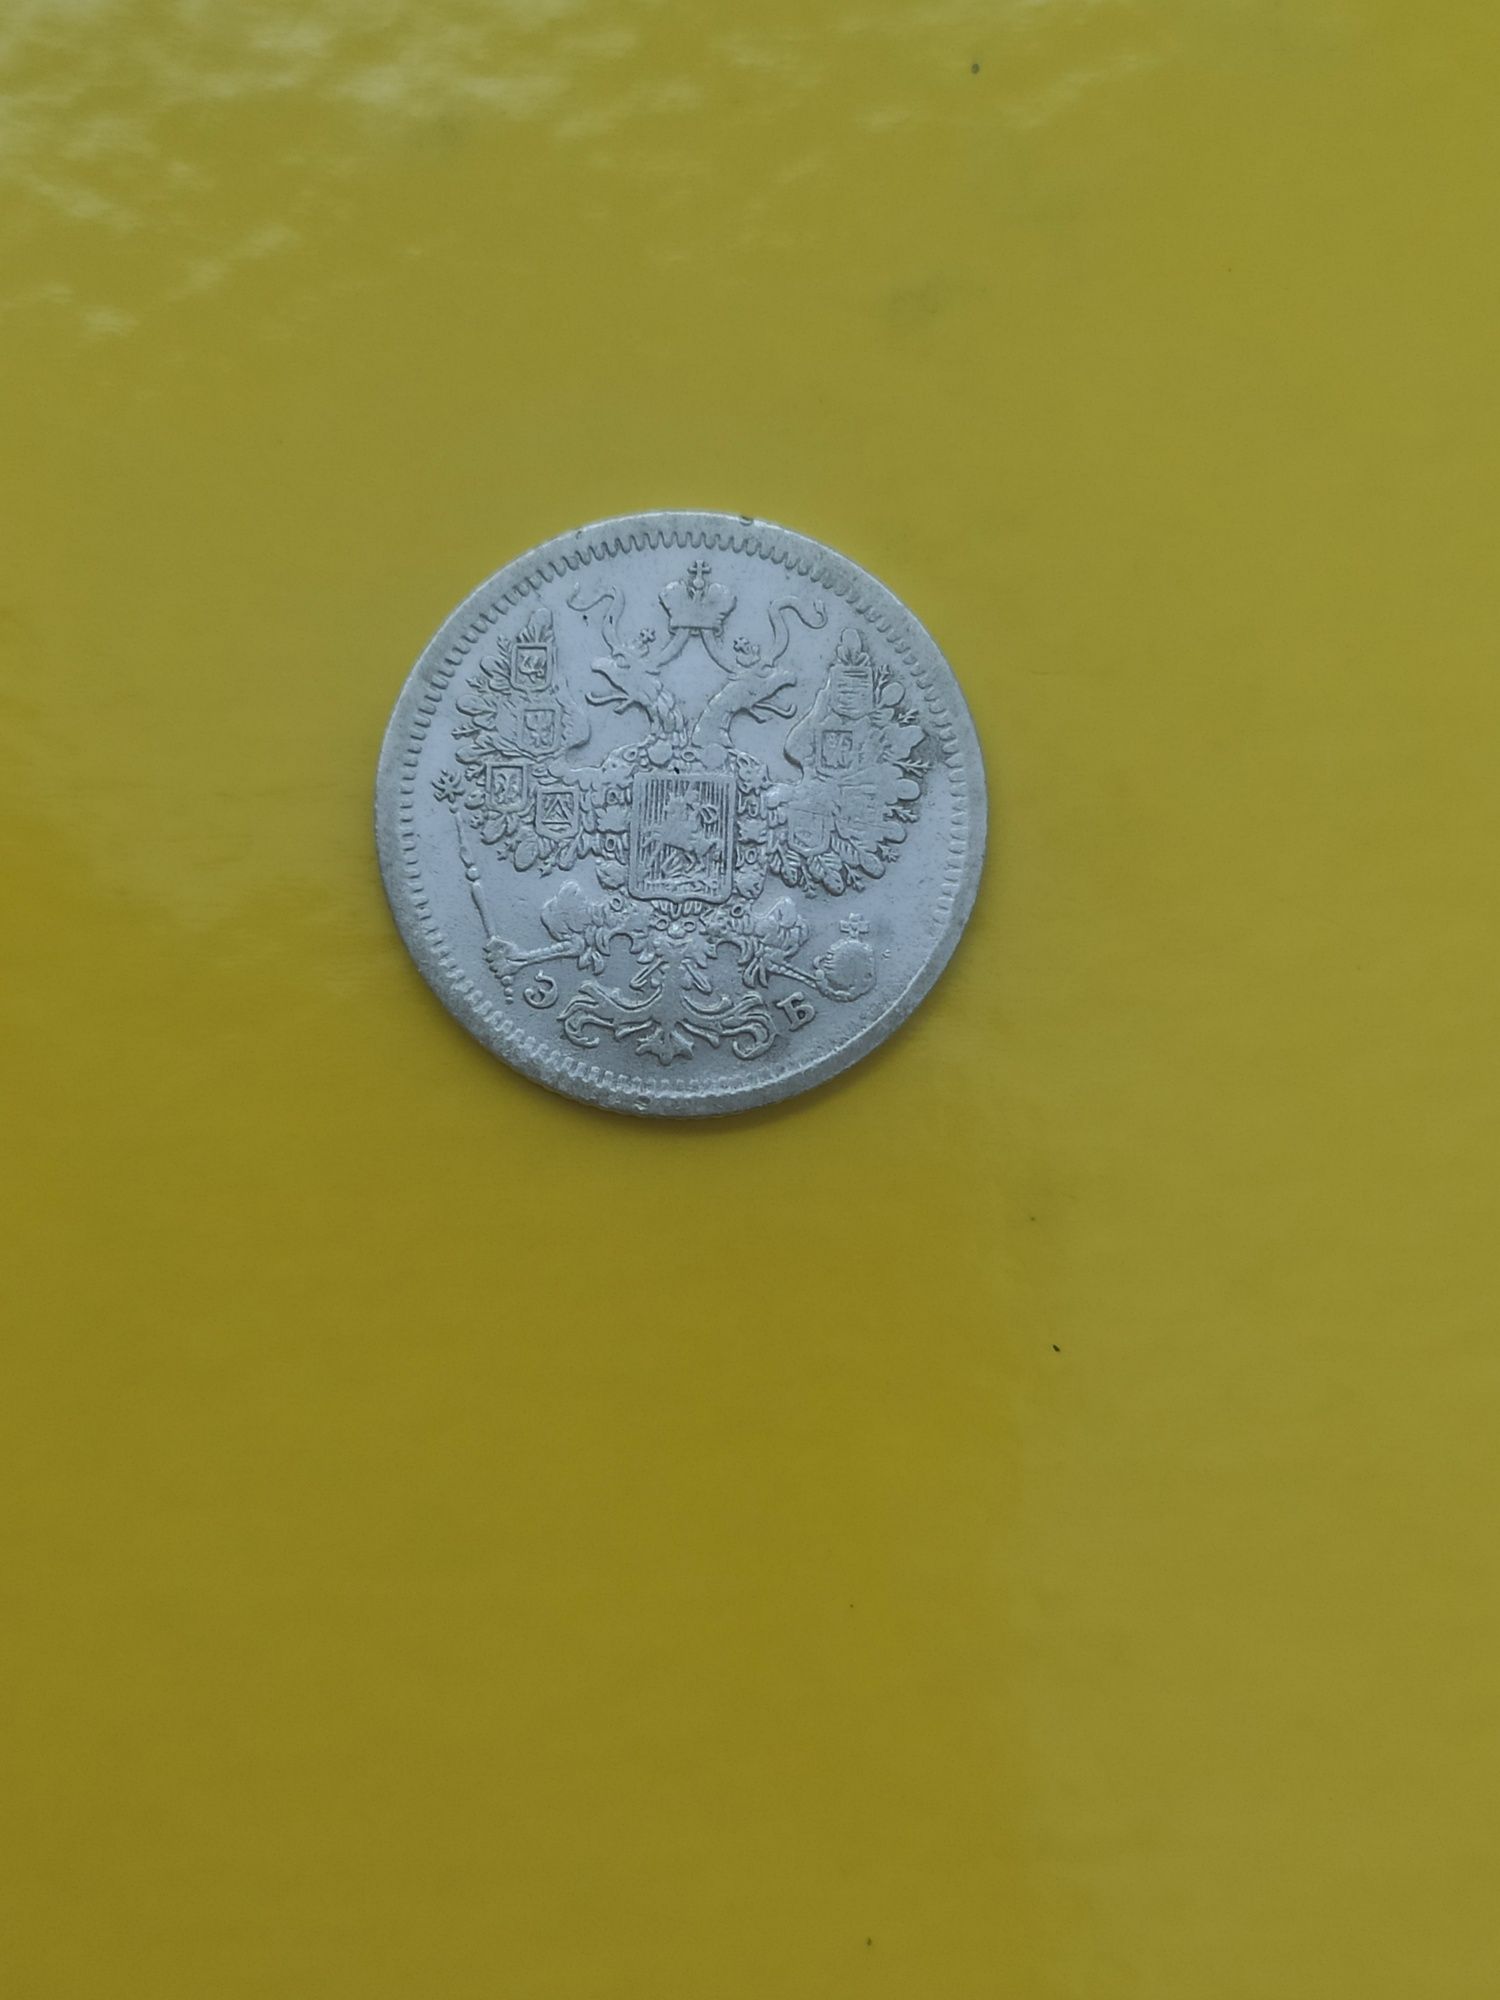 Срібна монета 1907 р.